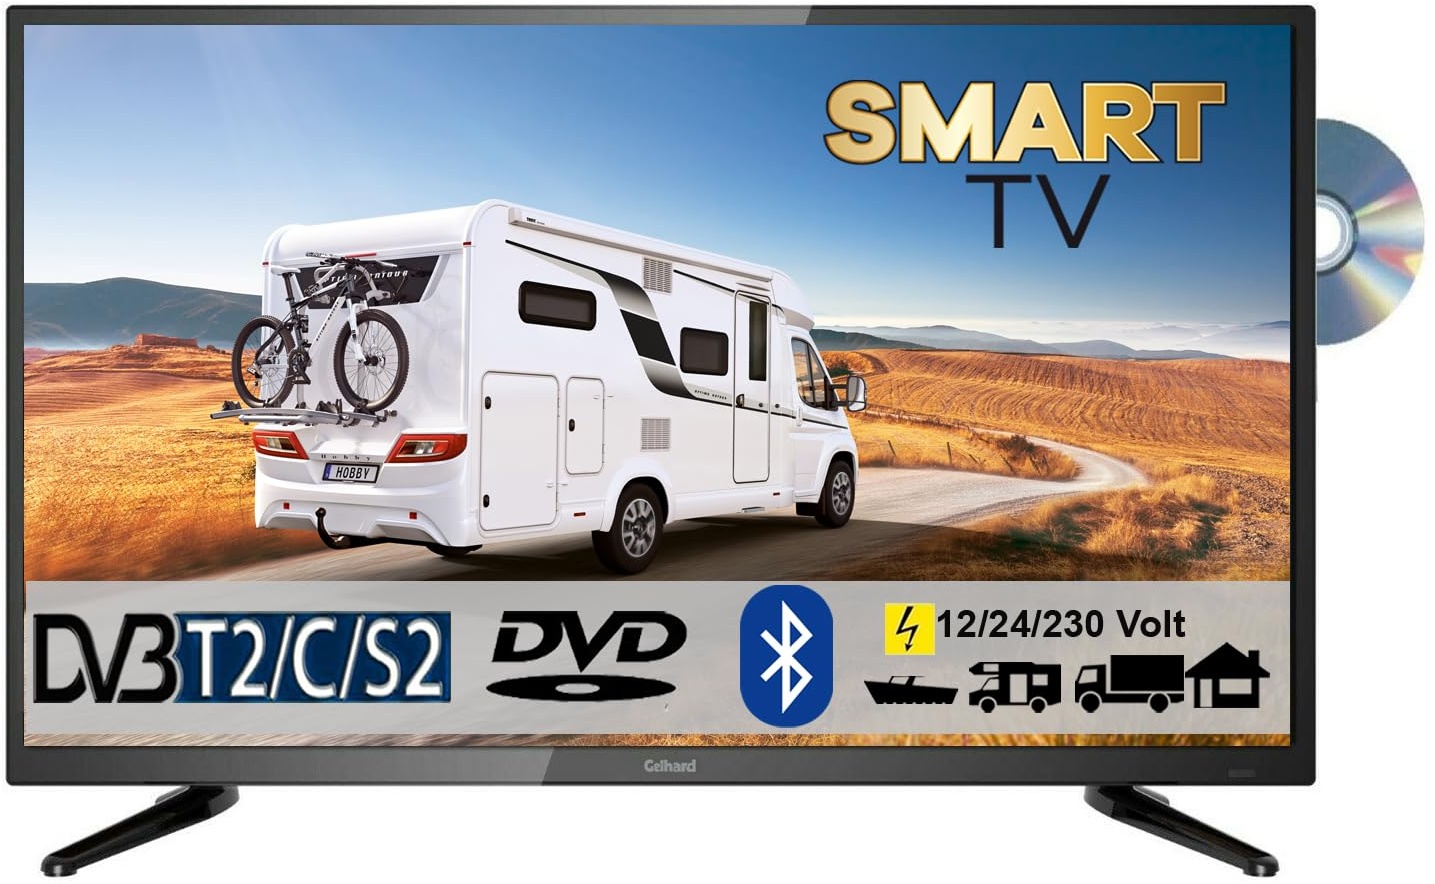 Gelhard GTV2755 LED Smart TV mit DVD und Bluetooth DVB-S2/C/T2 für 12V u. 230Volt WLAN Full HD